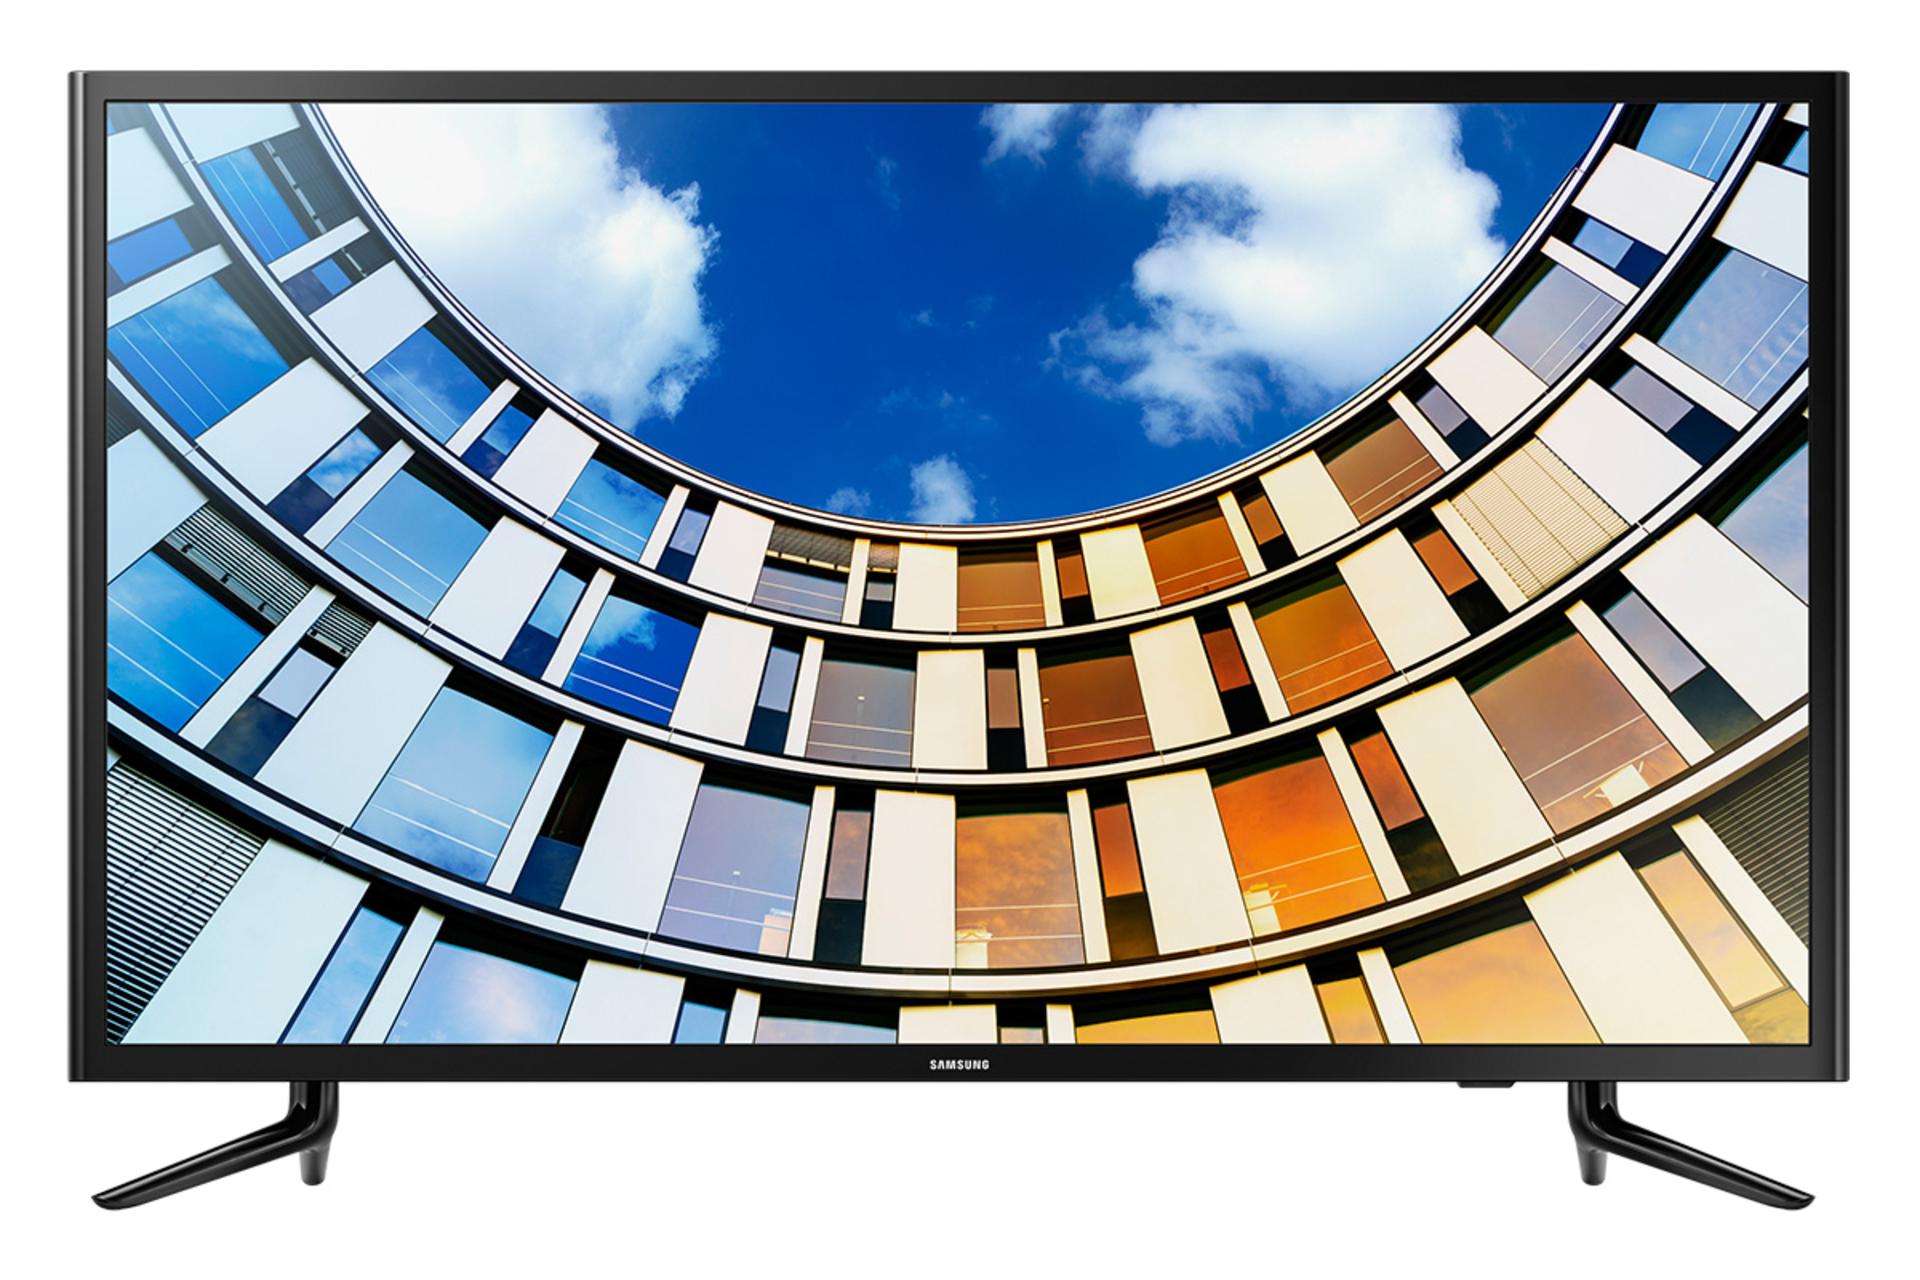 نمای جلو تلویزیون سامسونگ N5880 مدل 49 اینچ با صفحه روشن